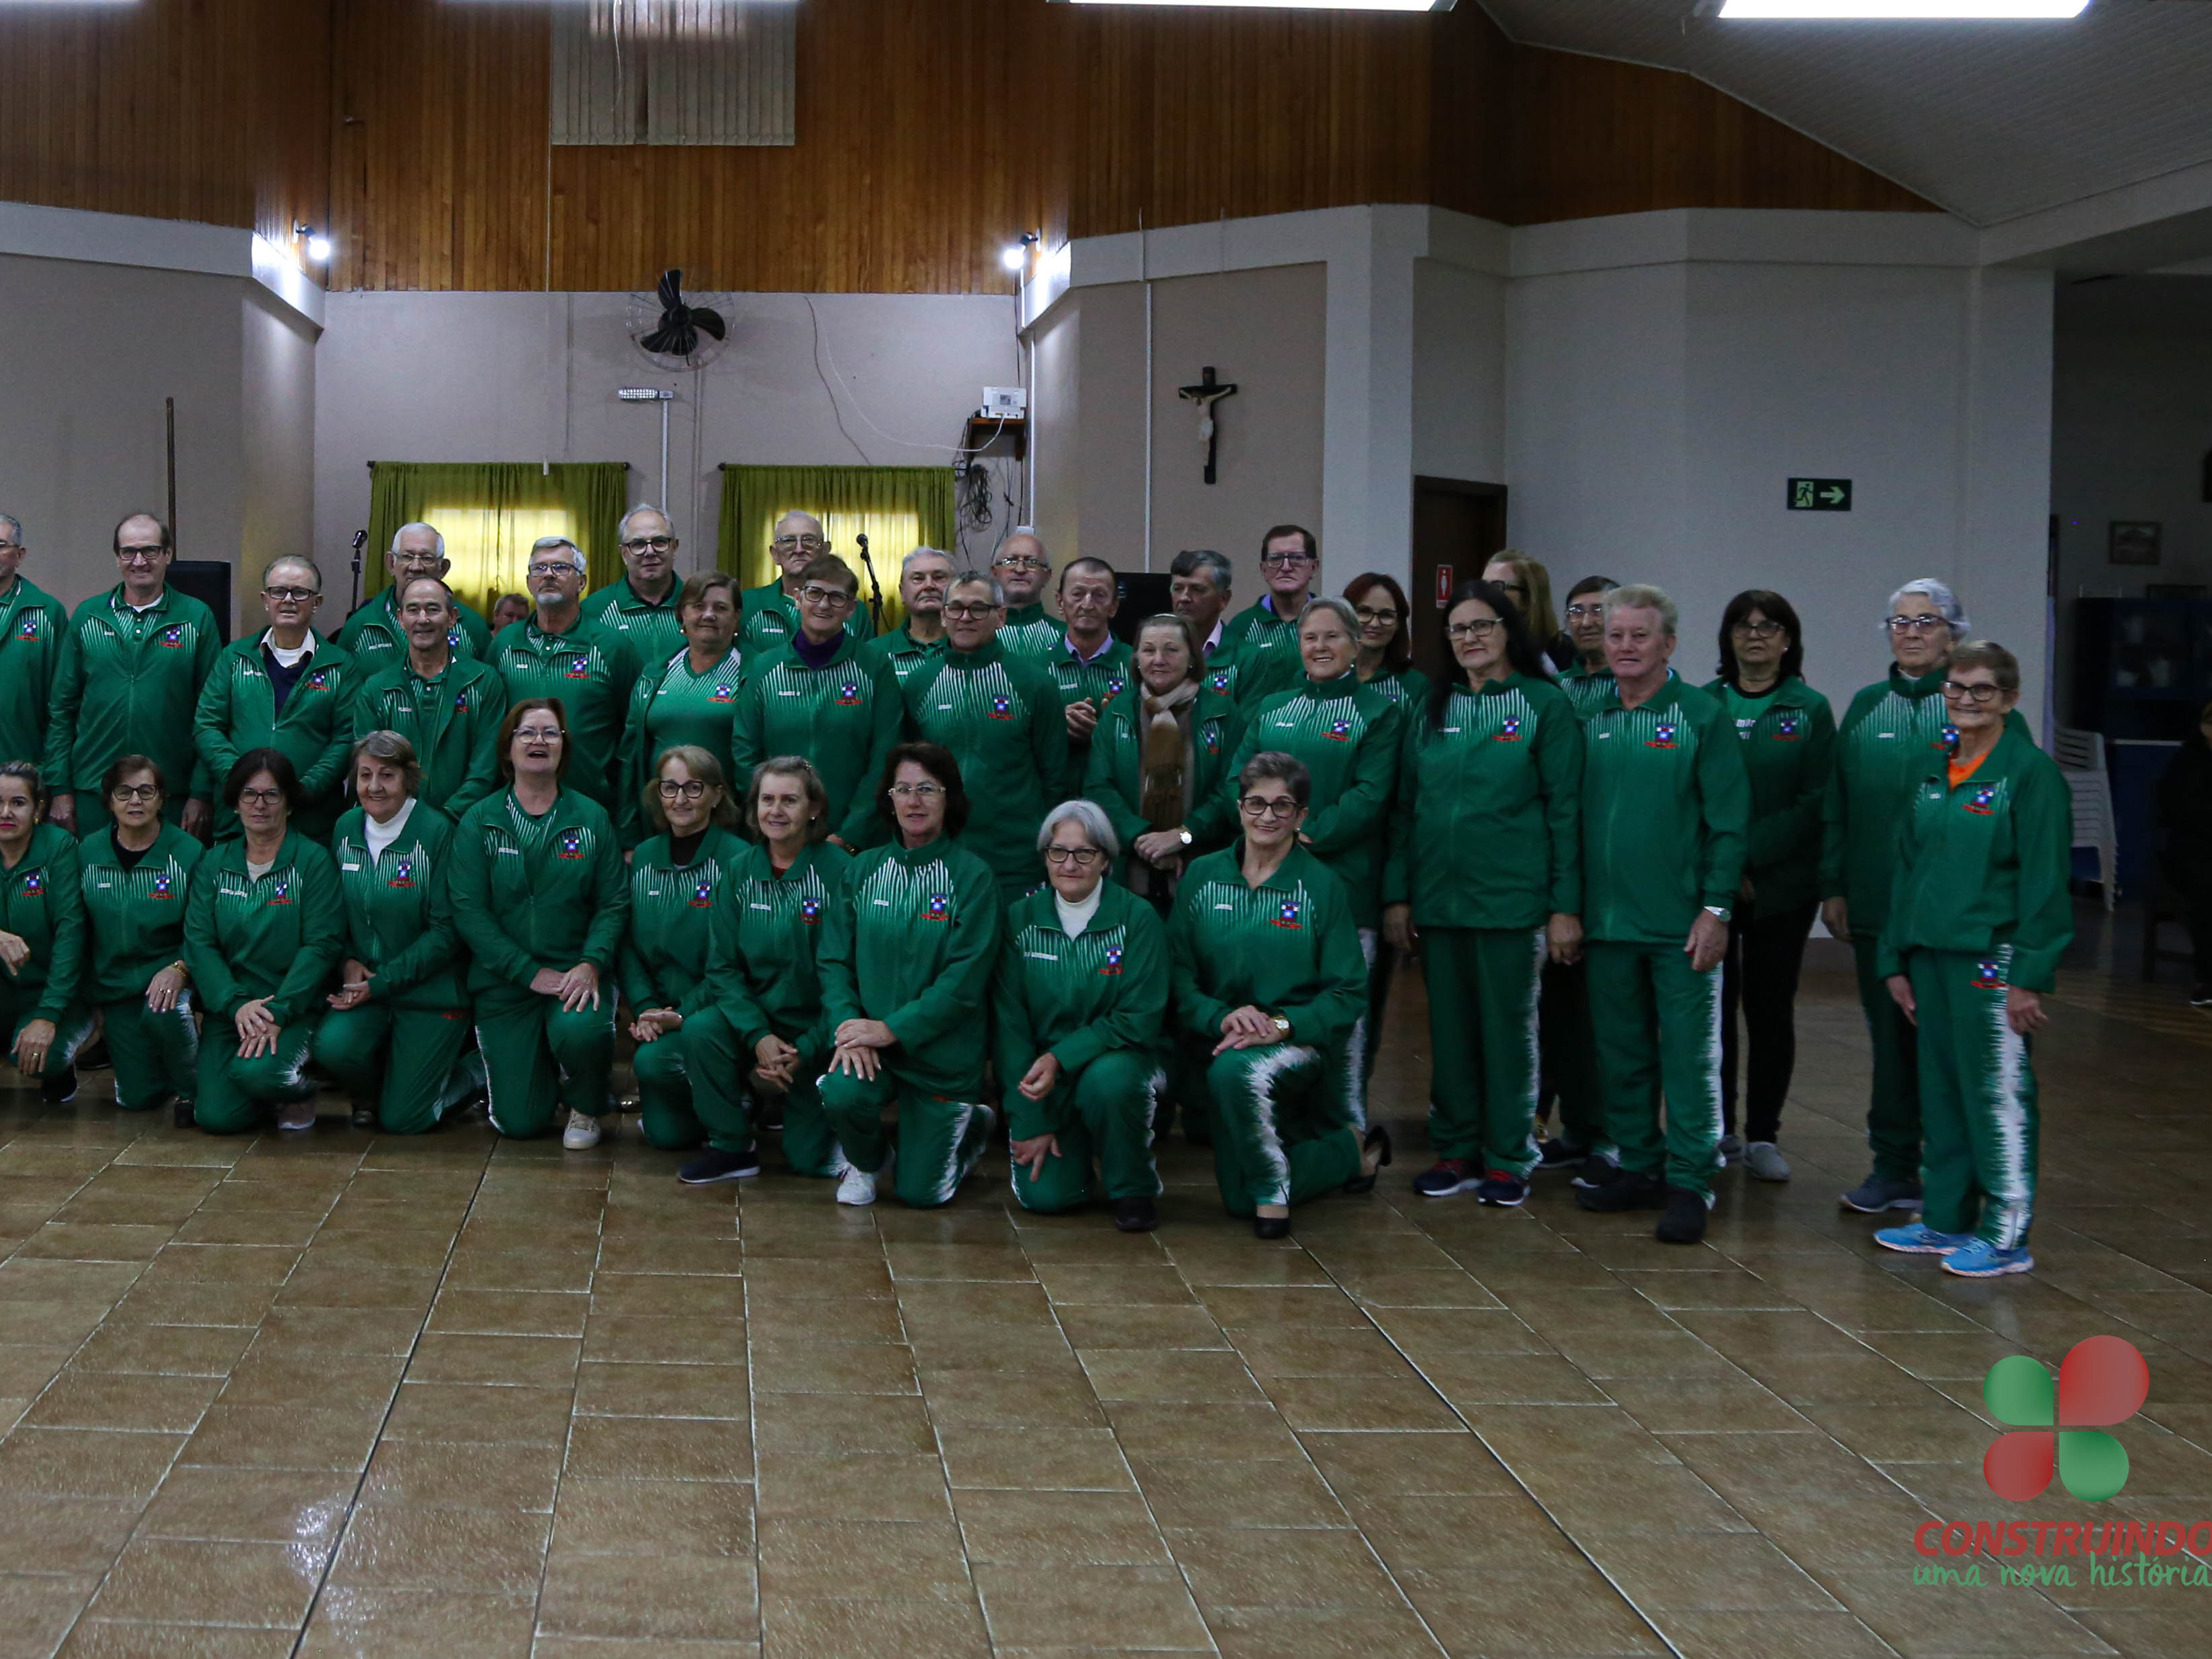 Grupo de Voleibol Gigante de Missal apresenta novos uniformes e agasalho da equipe